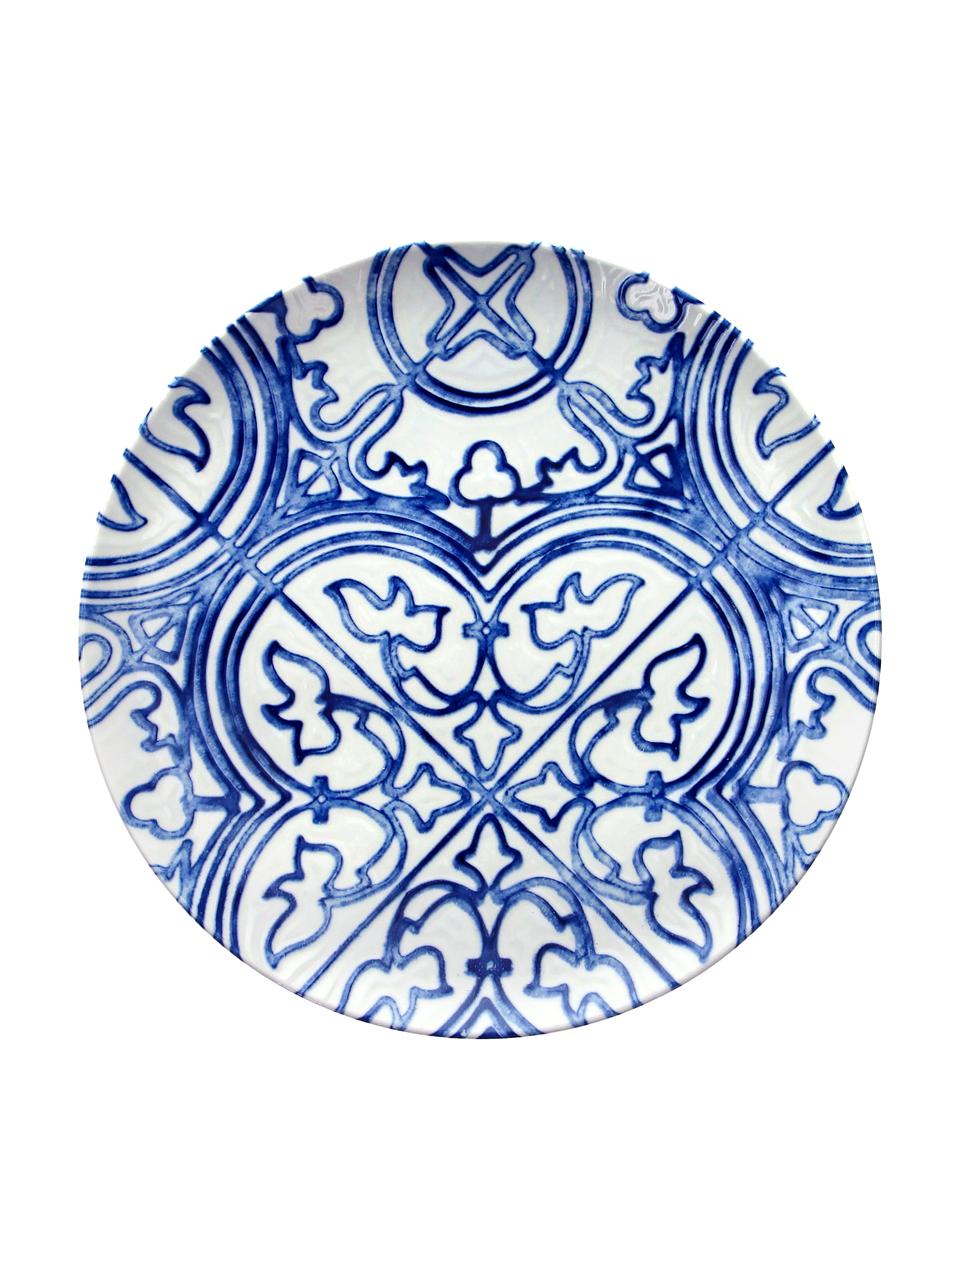 Speiseteller Maiolica aus Porzellan in Weiss/Blau, 2 Stück, Porzellan, Blau, Weiss, gemustert, Ø 26 cm